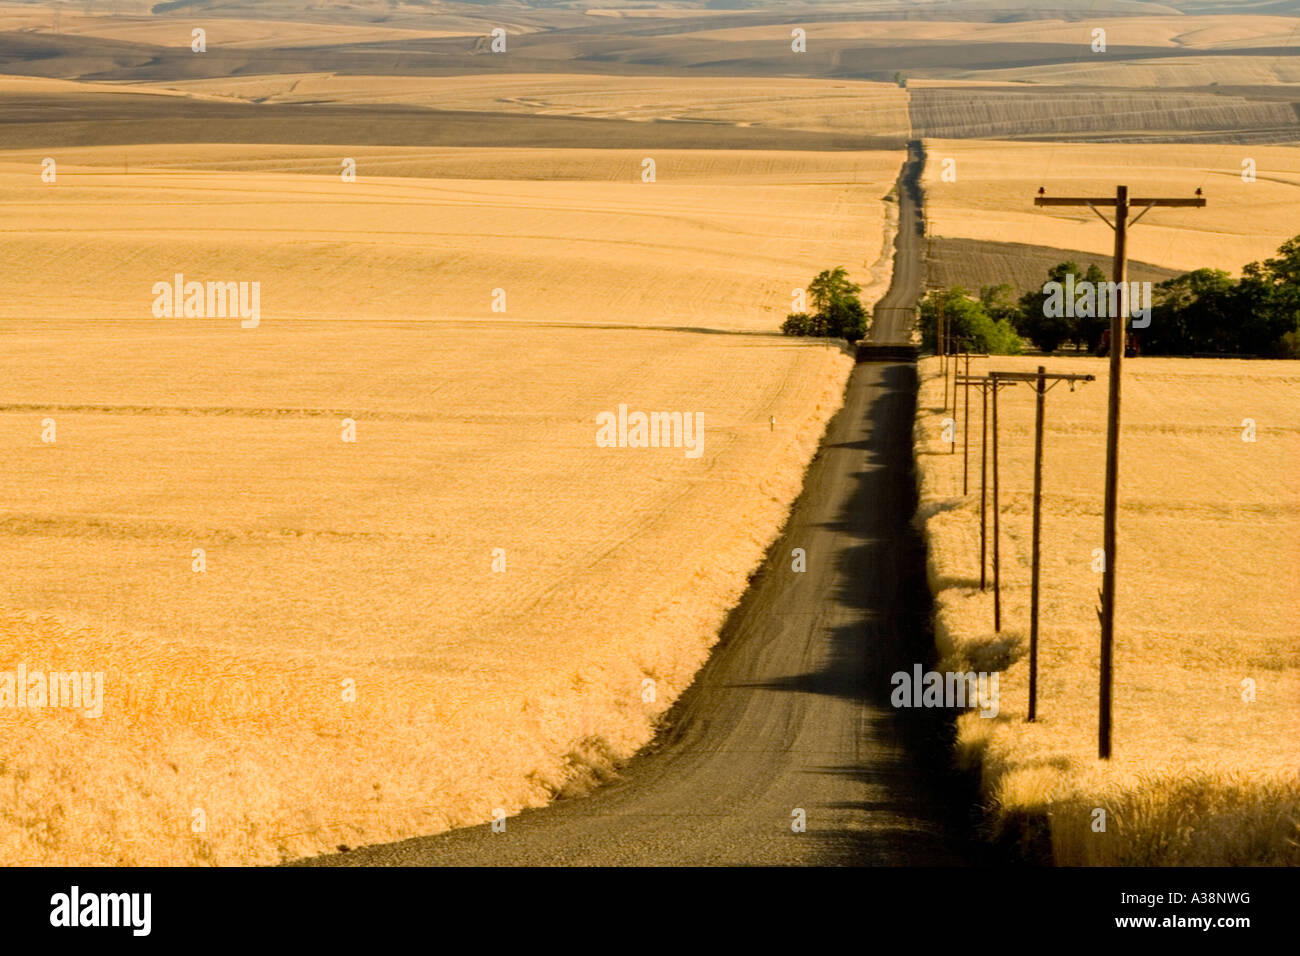 Carretera rural, campos de trigo maduro, postes de electricidad a la derecha, Oregón Foto de stock